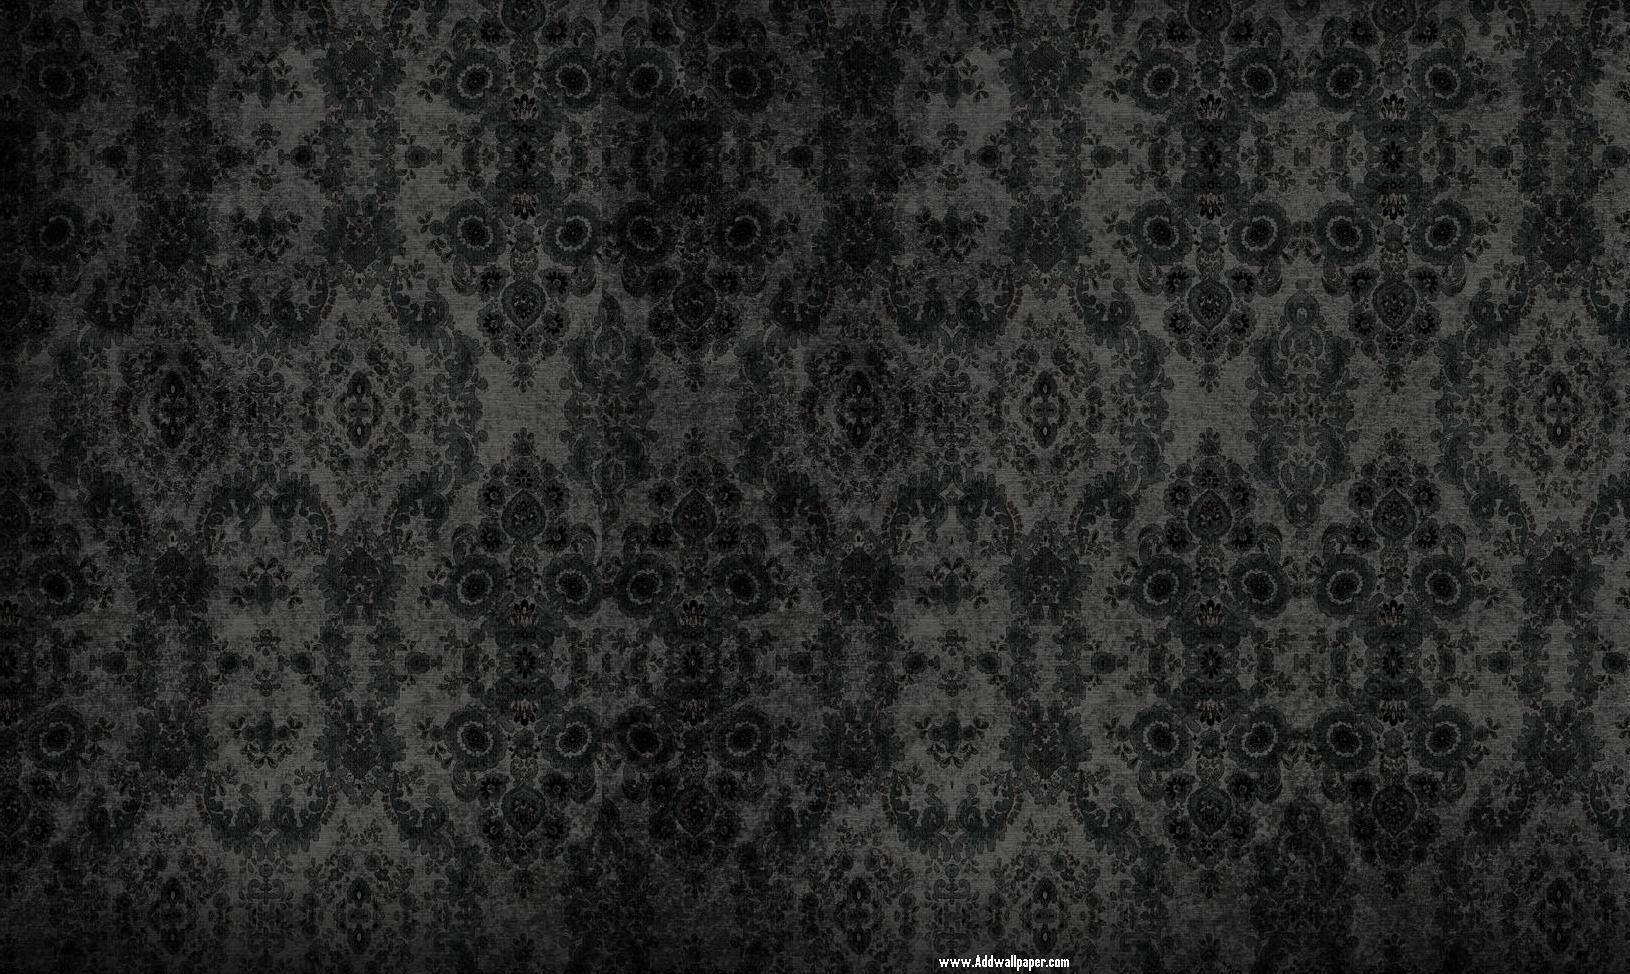 1630x974 Tải xuống miễn phí tumblr cổ điển hình nền nền đen và trắng [1630x974] cho Máy tính để bàn, Di động & Máy tính bảng của bạn.  Khám phá Hình nền cổ điển đen.  Hình nền cổ điển, Hình nền cổ điển đen và trắng, Hình nền cổ điển đỏ